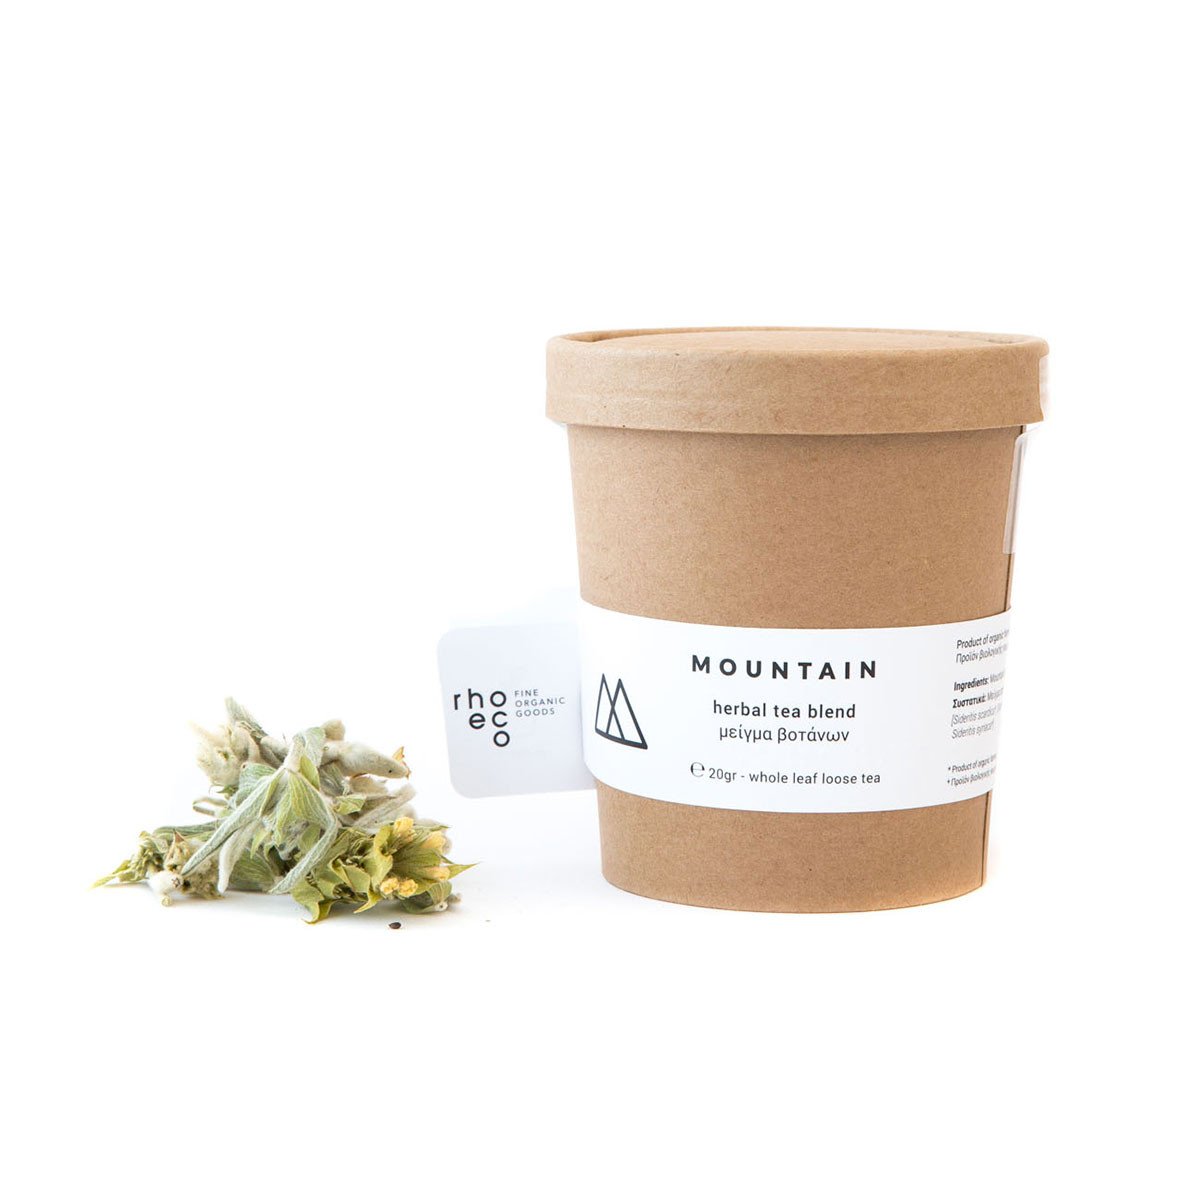 Mountain Organic Herbal Tea Blend - The Future Kept - 1